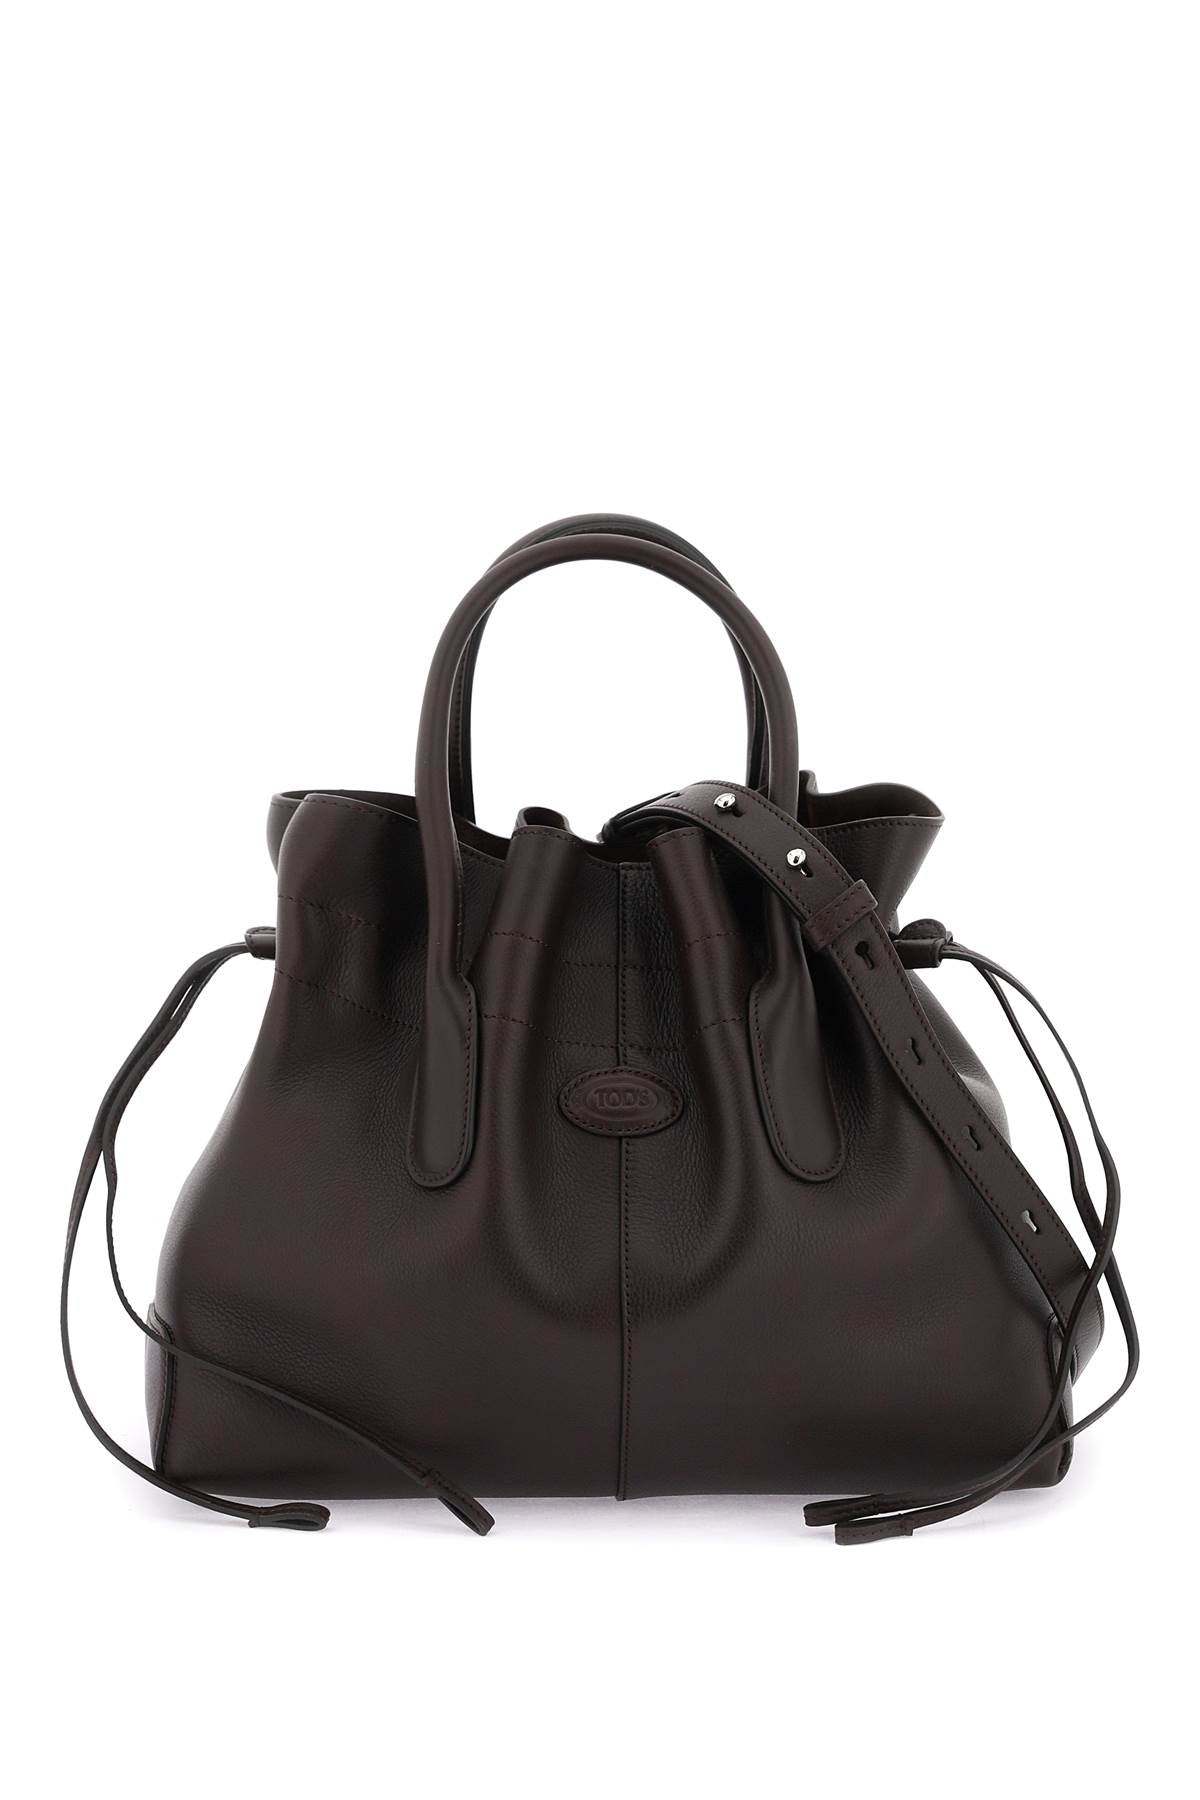 TOD'S Women's Elegant Brown Calf Leather Top-Handle Mini Tote Bag, FW23